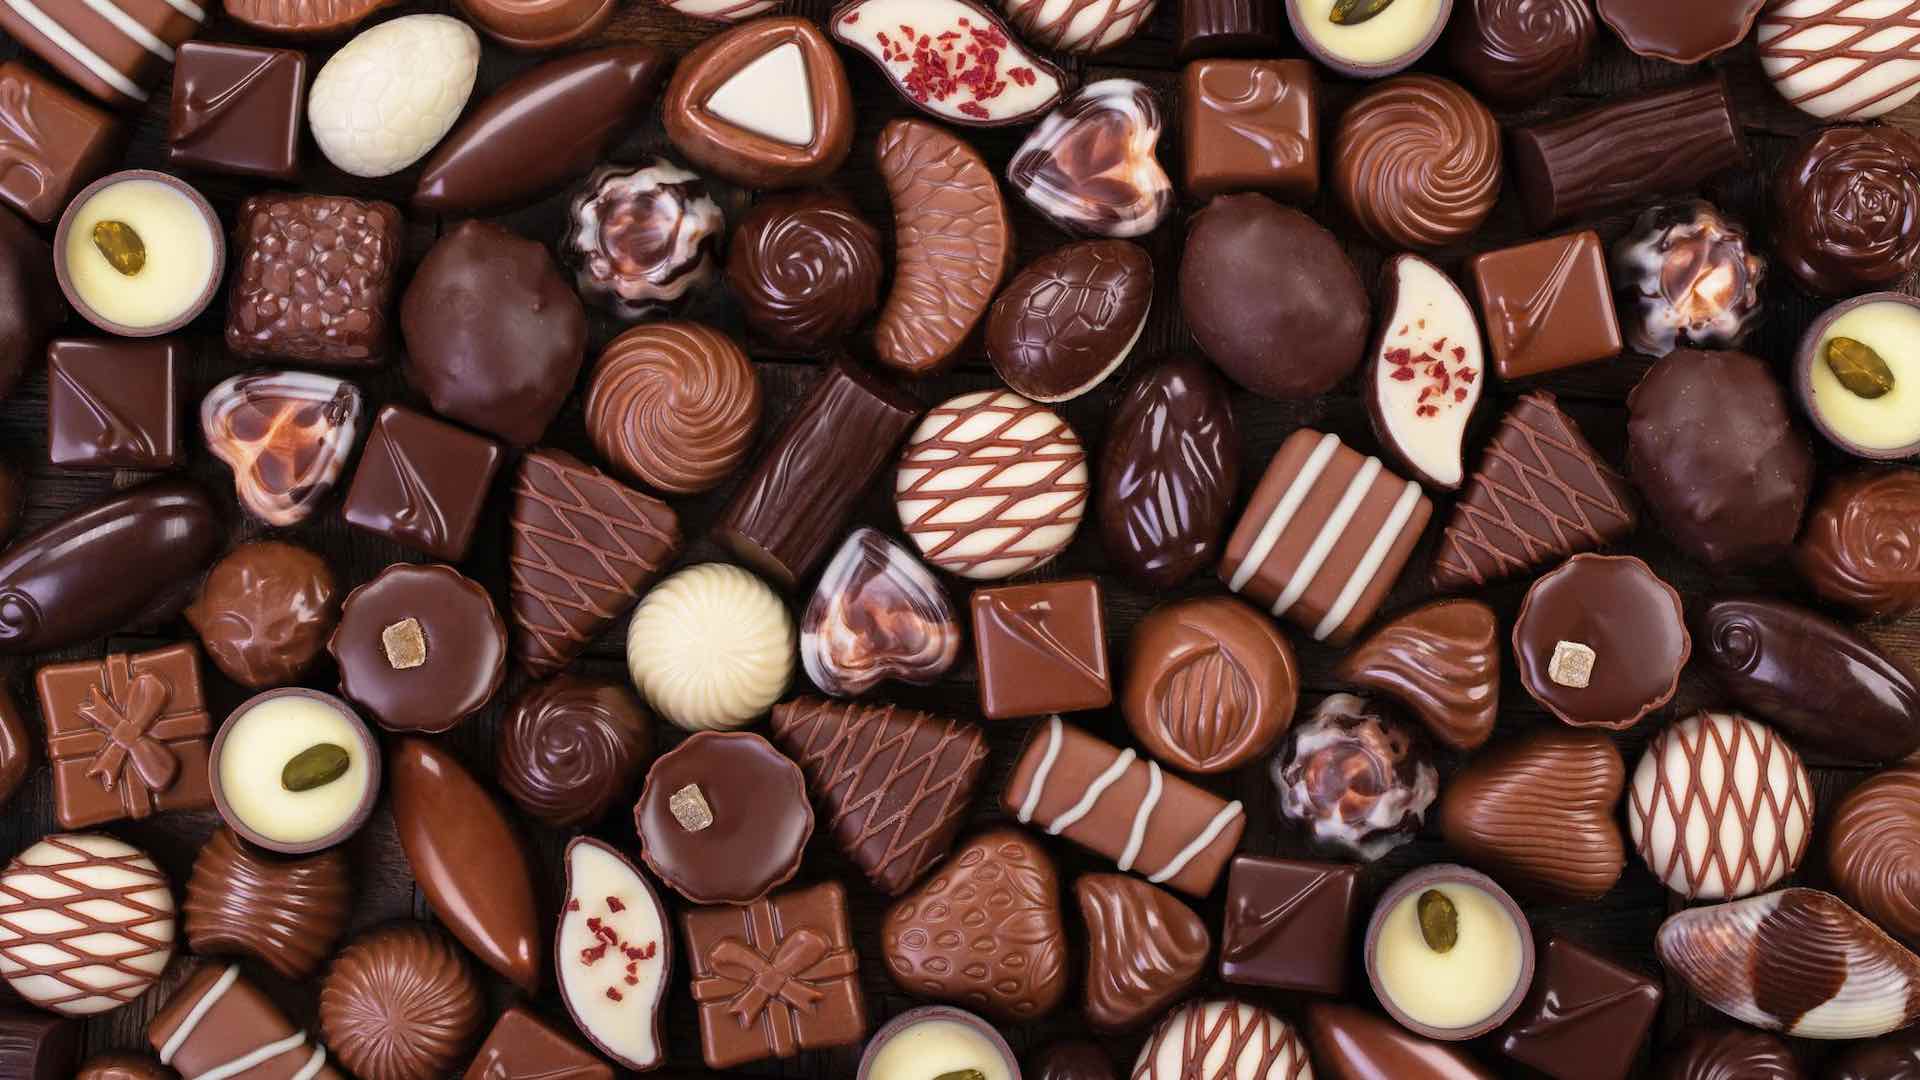 هيرشي: التدقيق على شركة الشوكولاتة الأمريكية بزعم احتواء منتجاتها على مستويات ضارة من المعادن